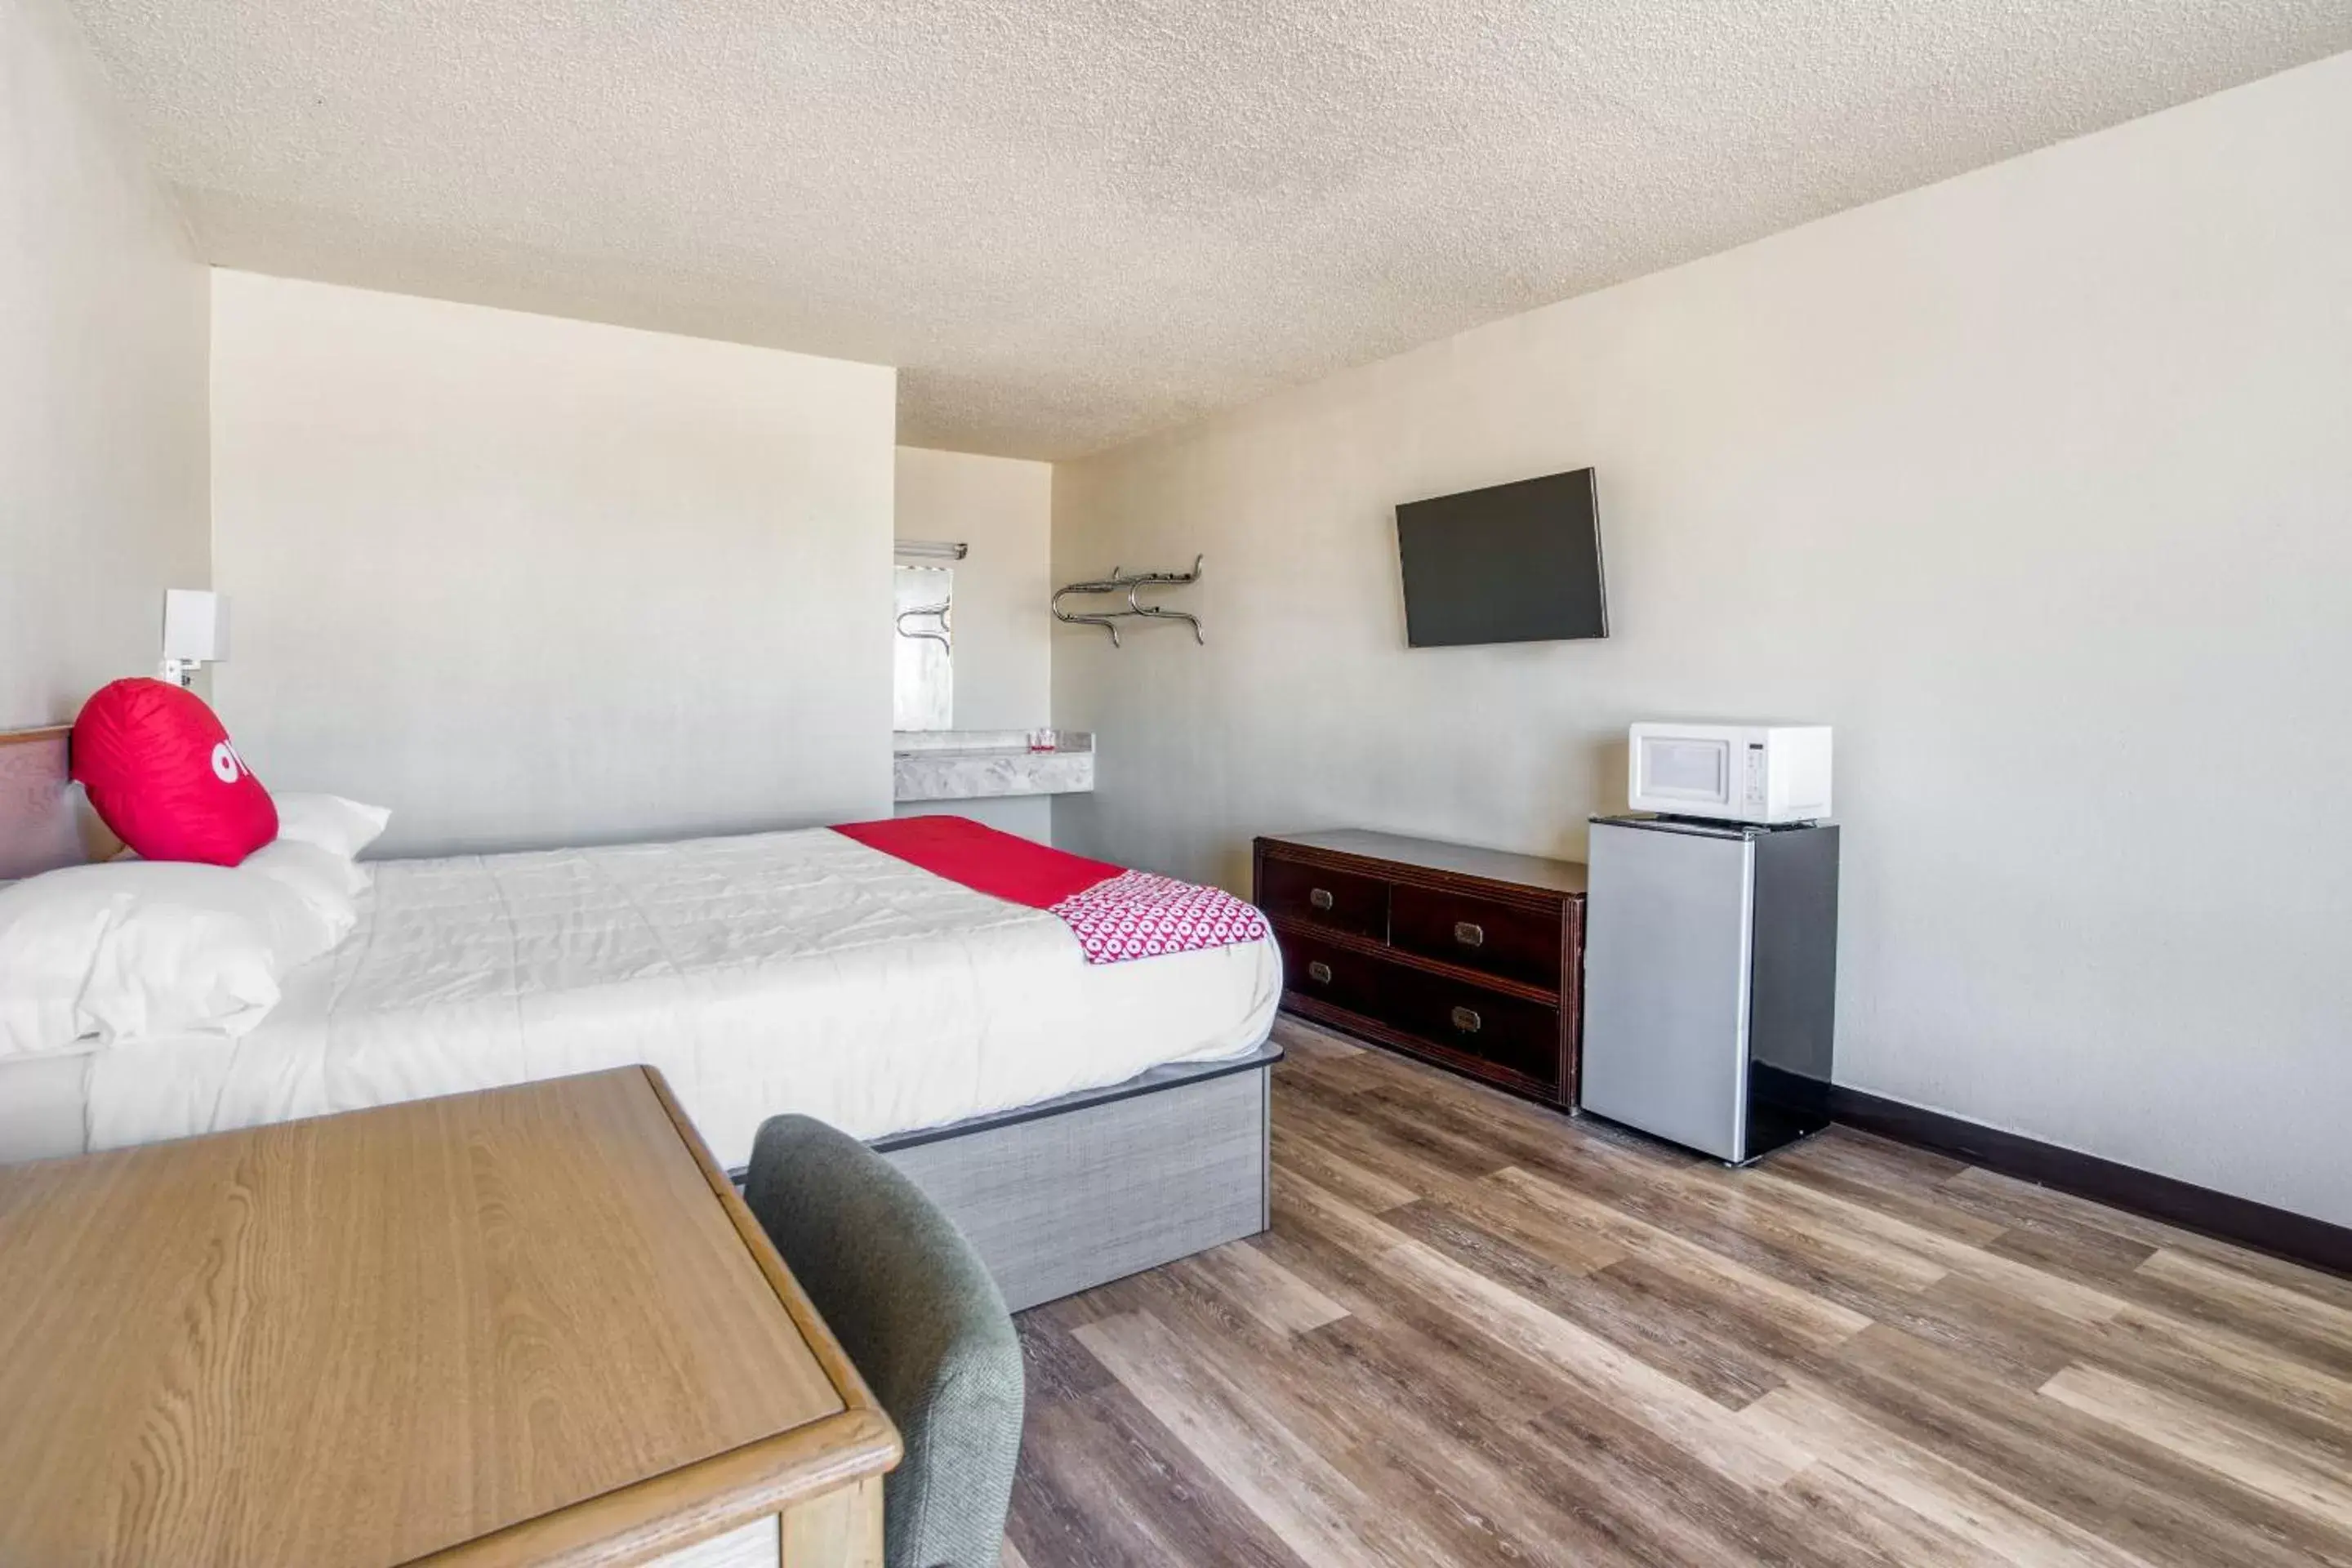 Bedroom, Room Photo in OYO Hotel Waco University Area I-35